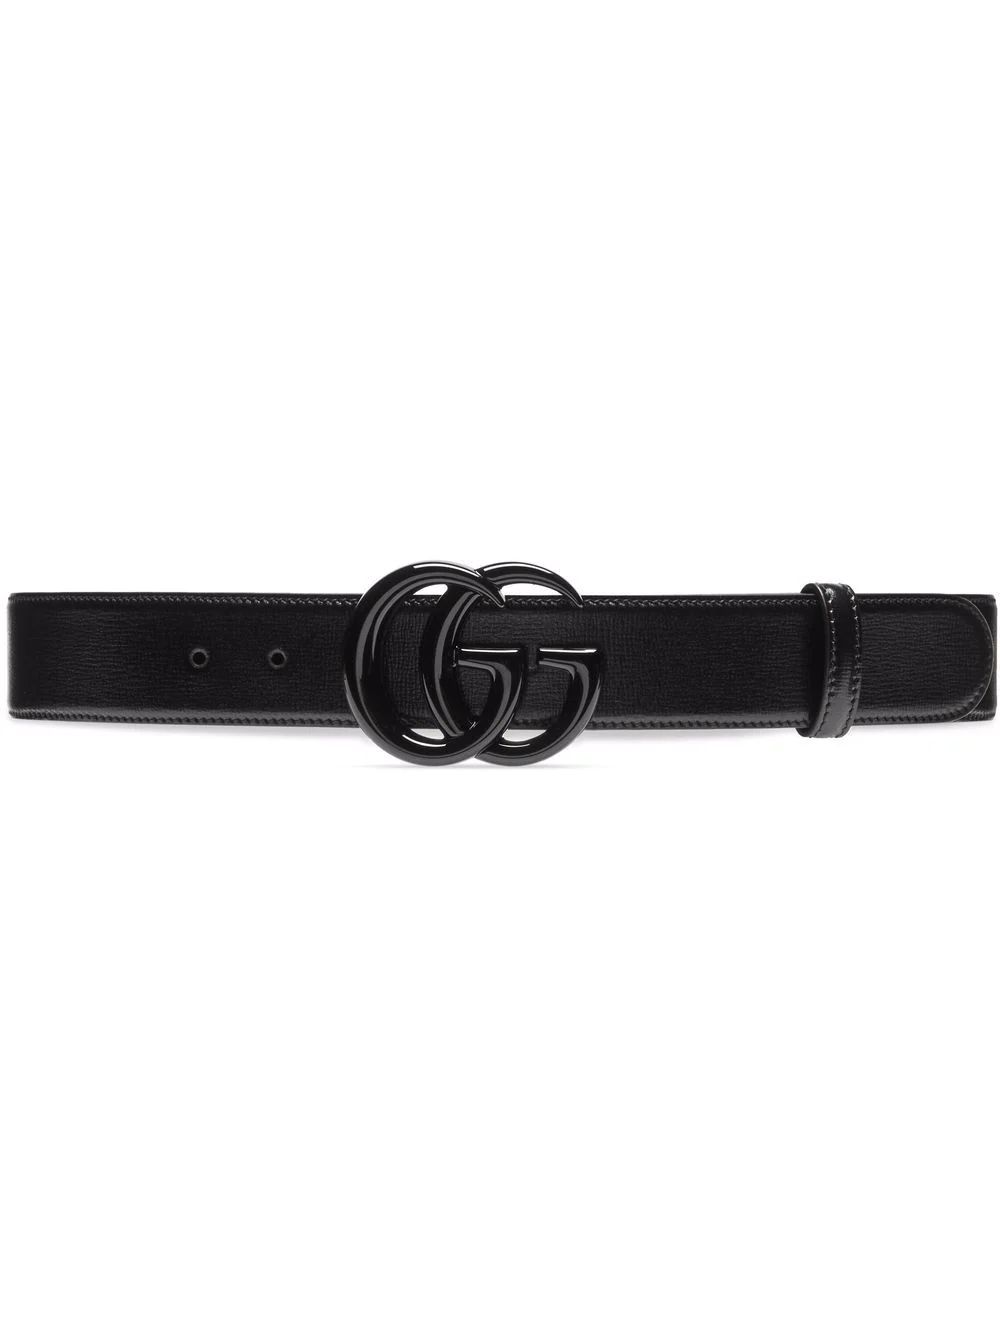 Gucci GG Marmont Leather Belt - Farfetch | Farfetch Global